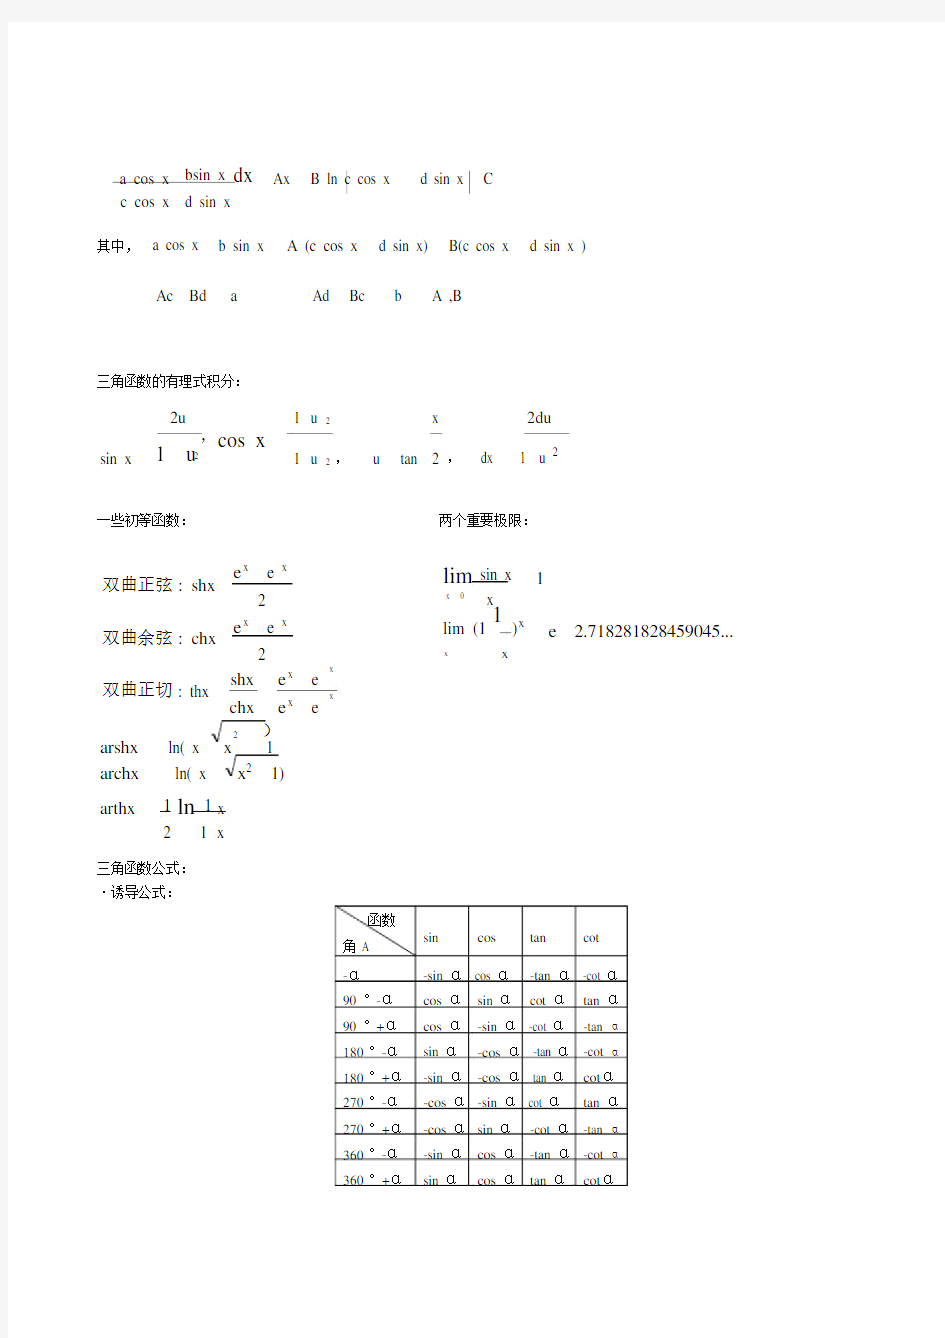 考研数学公式大全(考研必备).doc